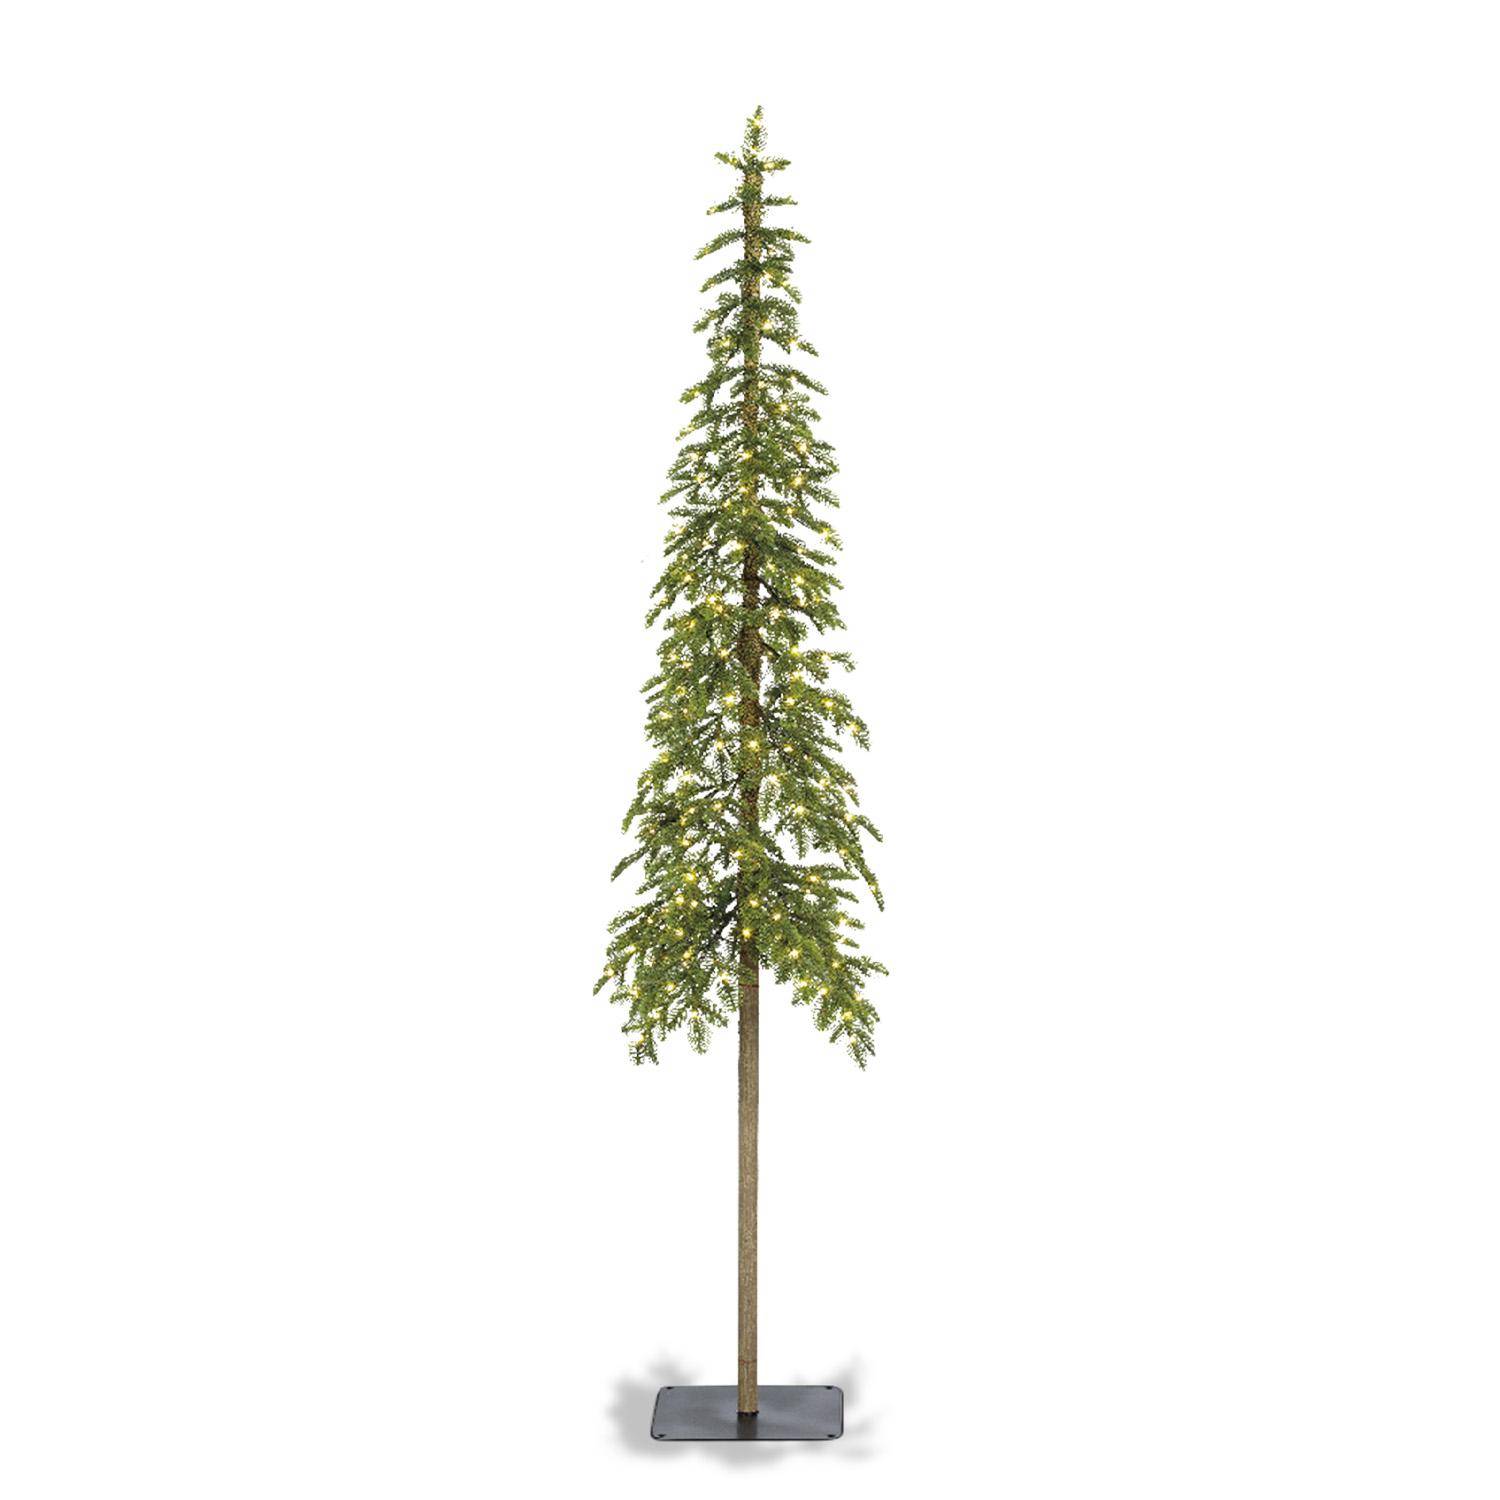 Kunstboom 210cm, dun, kegelvormige top - Alberta - lange rechte stam, realistische uitstraling, inclusief voet en lichtslinger Photo4